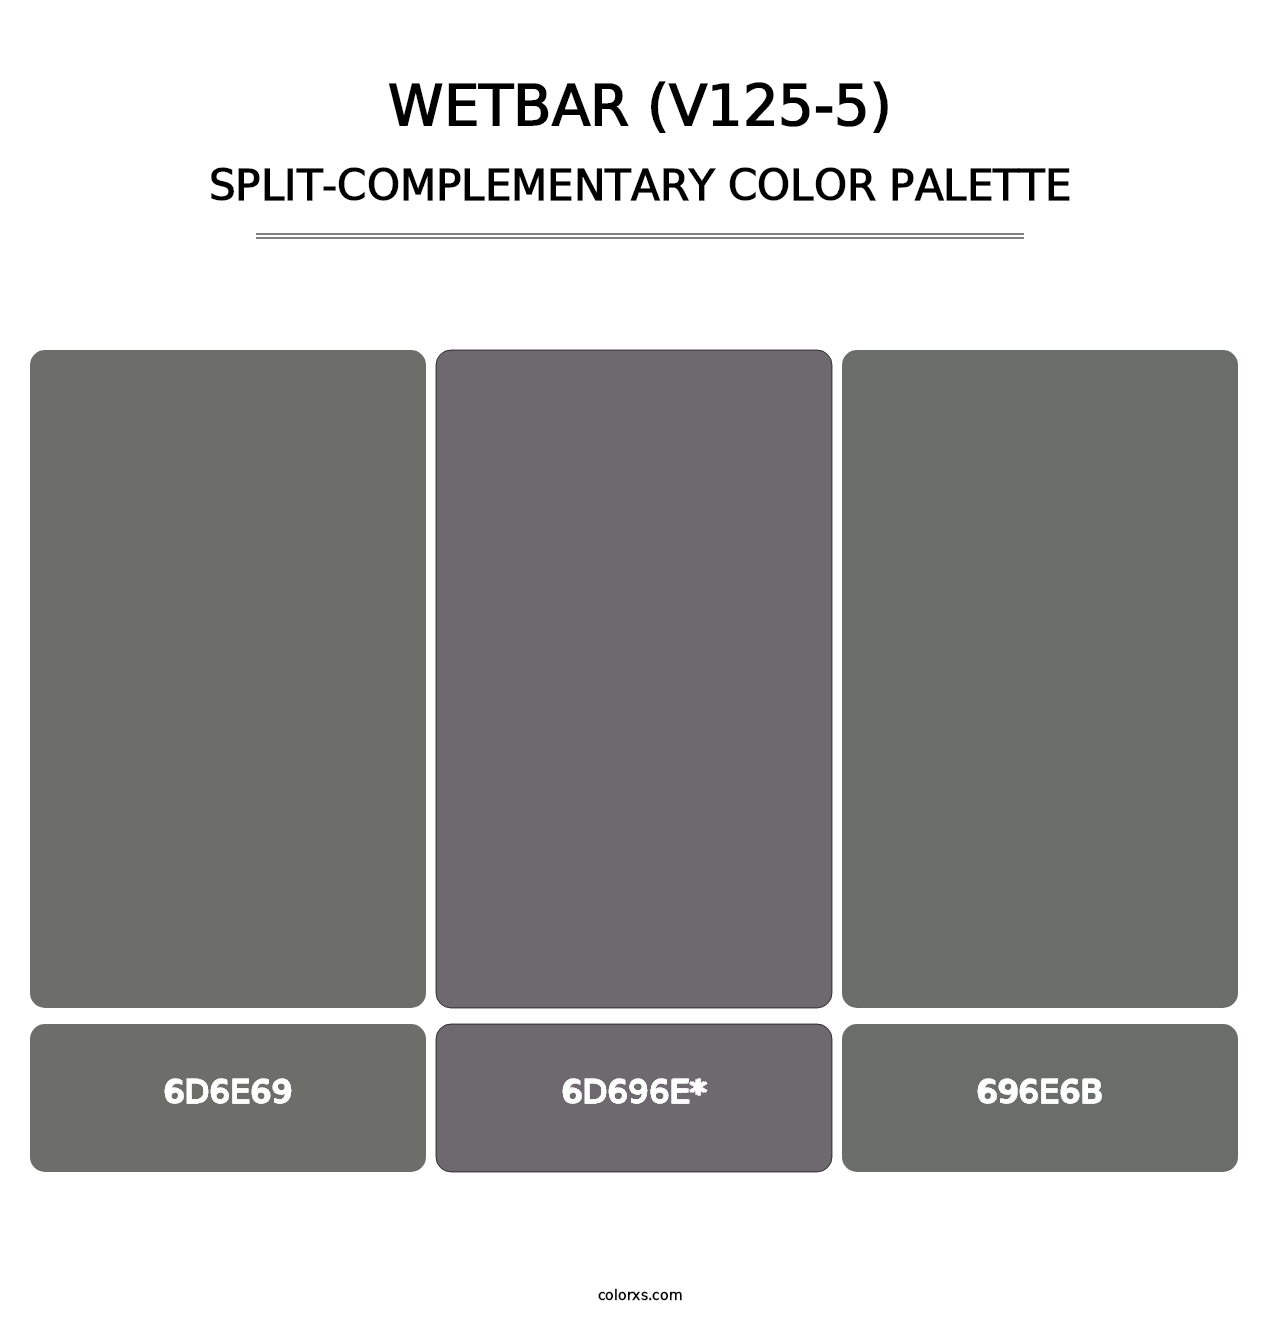 Wetbar (V125-5) - Split-Complementary Color Palette